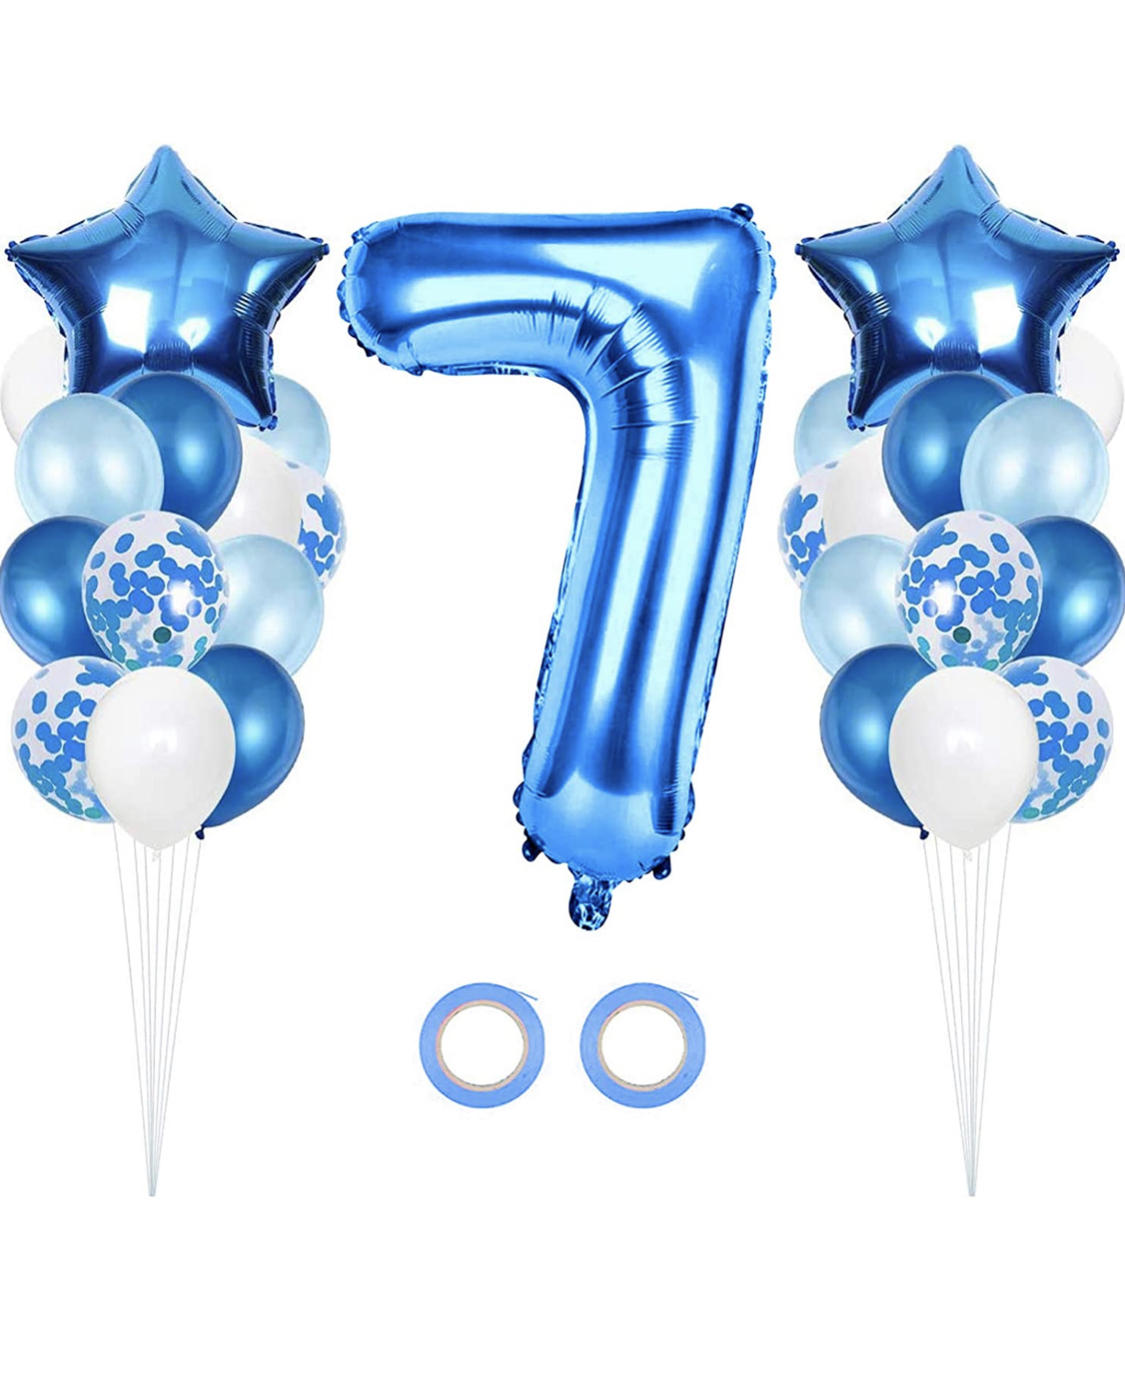 7 års kalas ballong dekoration i blå